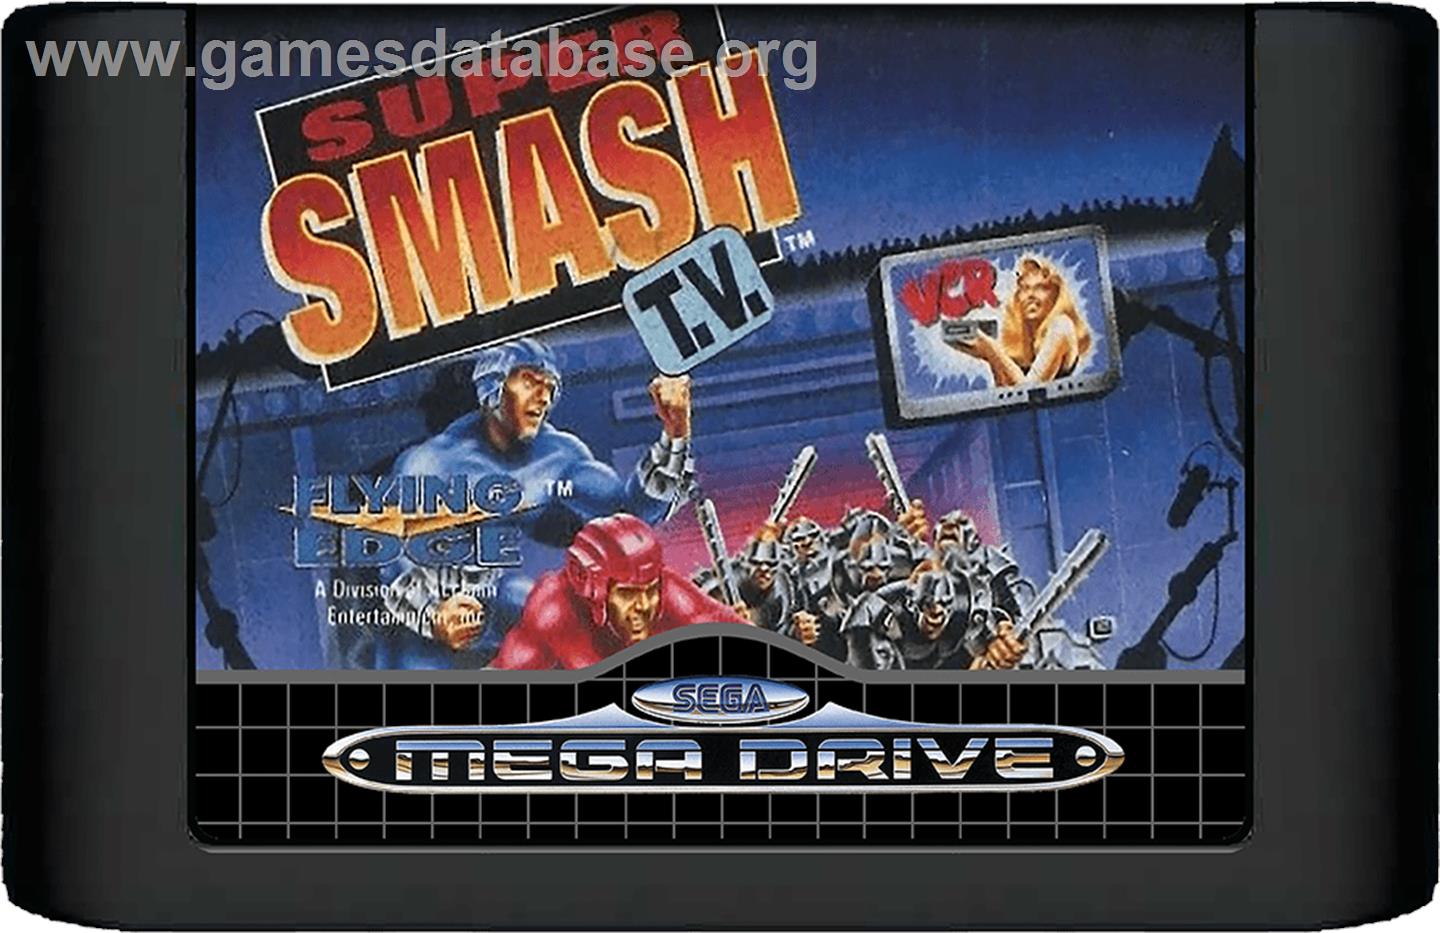 Super Smash T.V. - Sega Genesis - Artwork - Cartridge